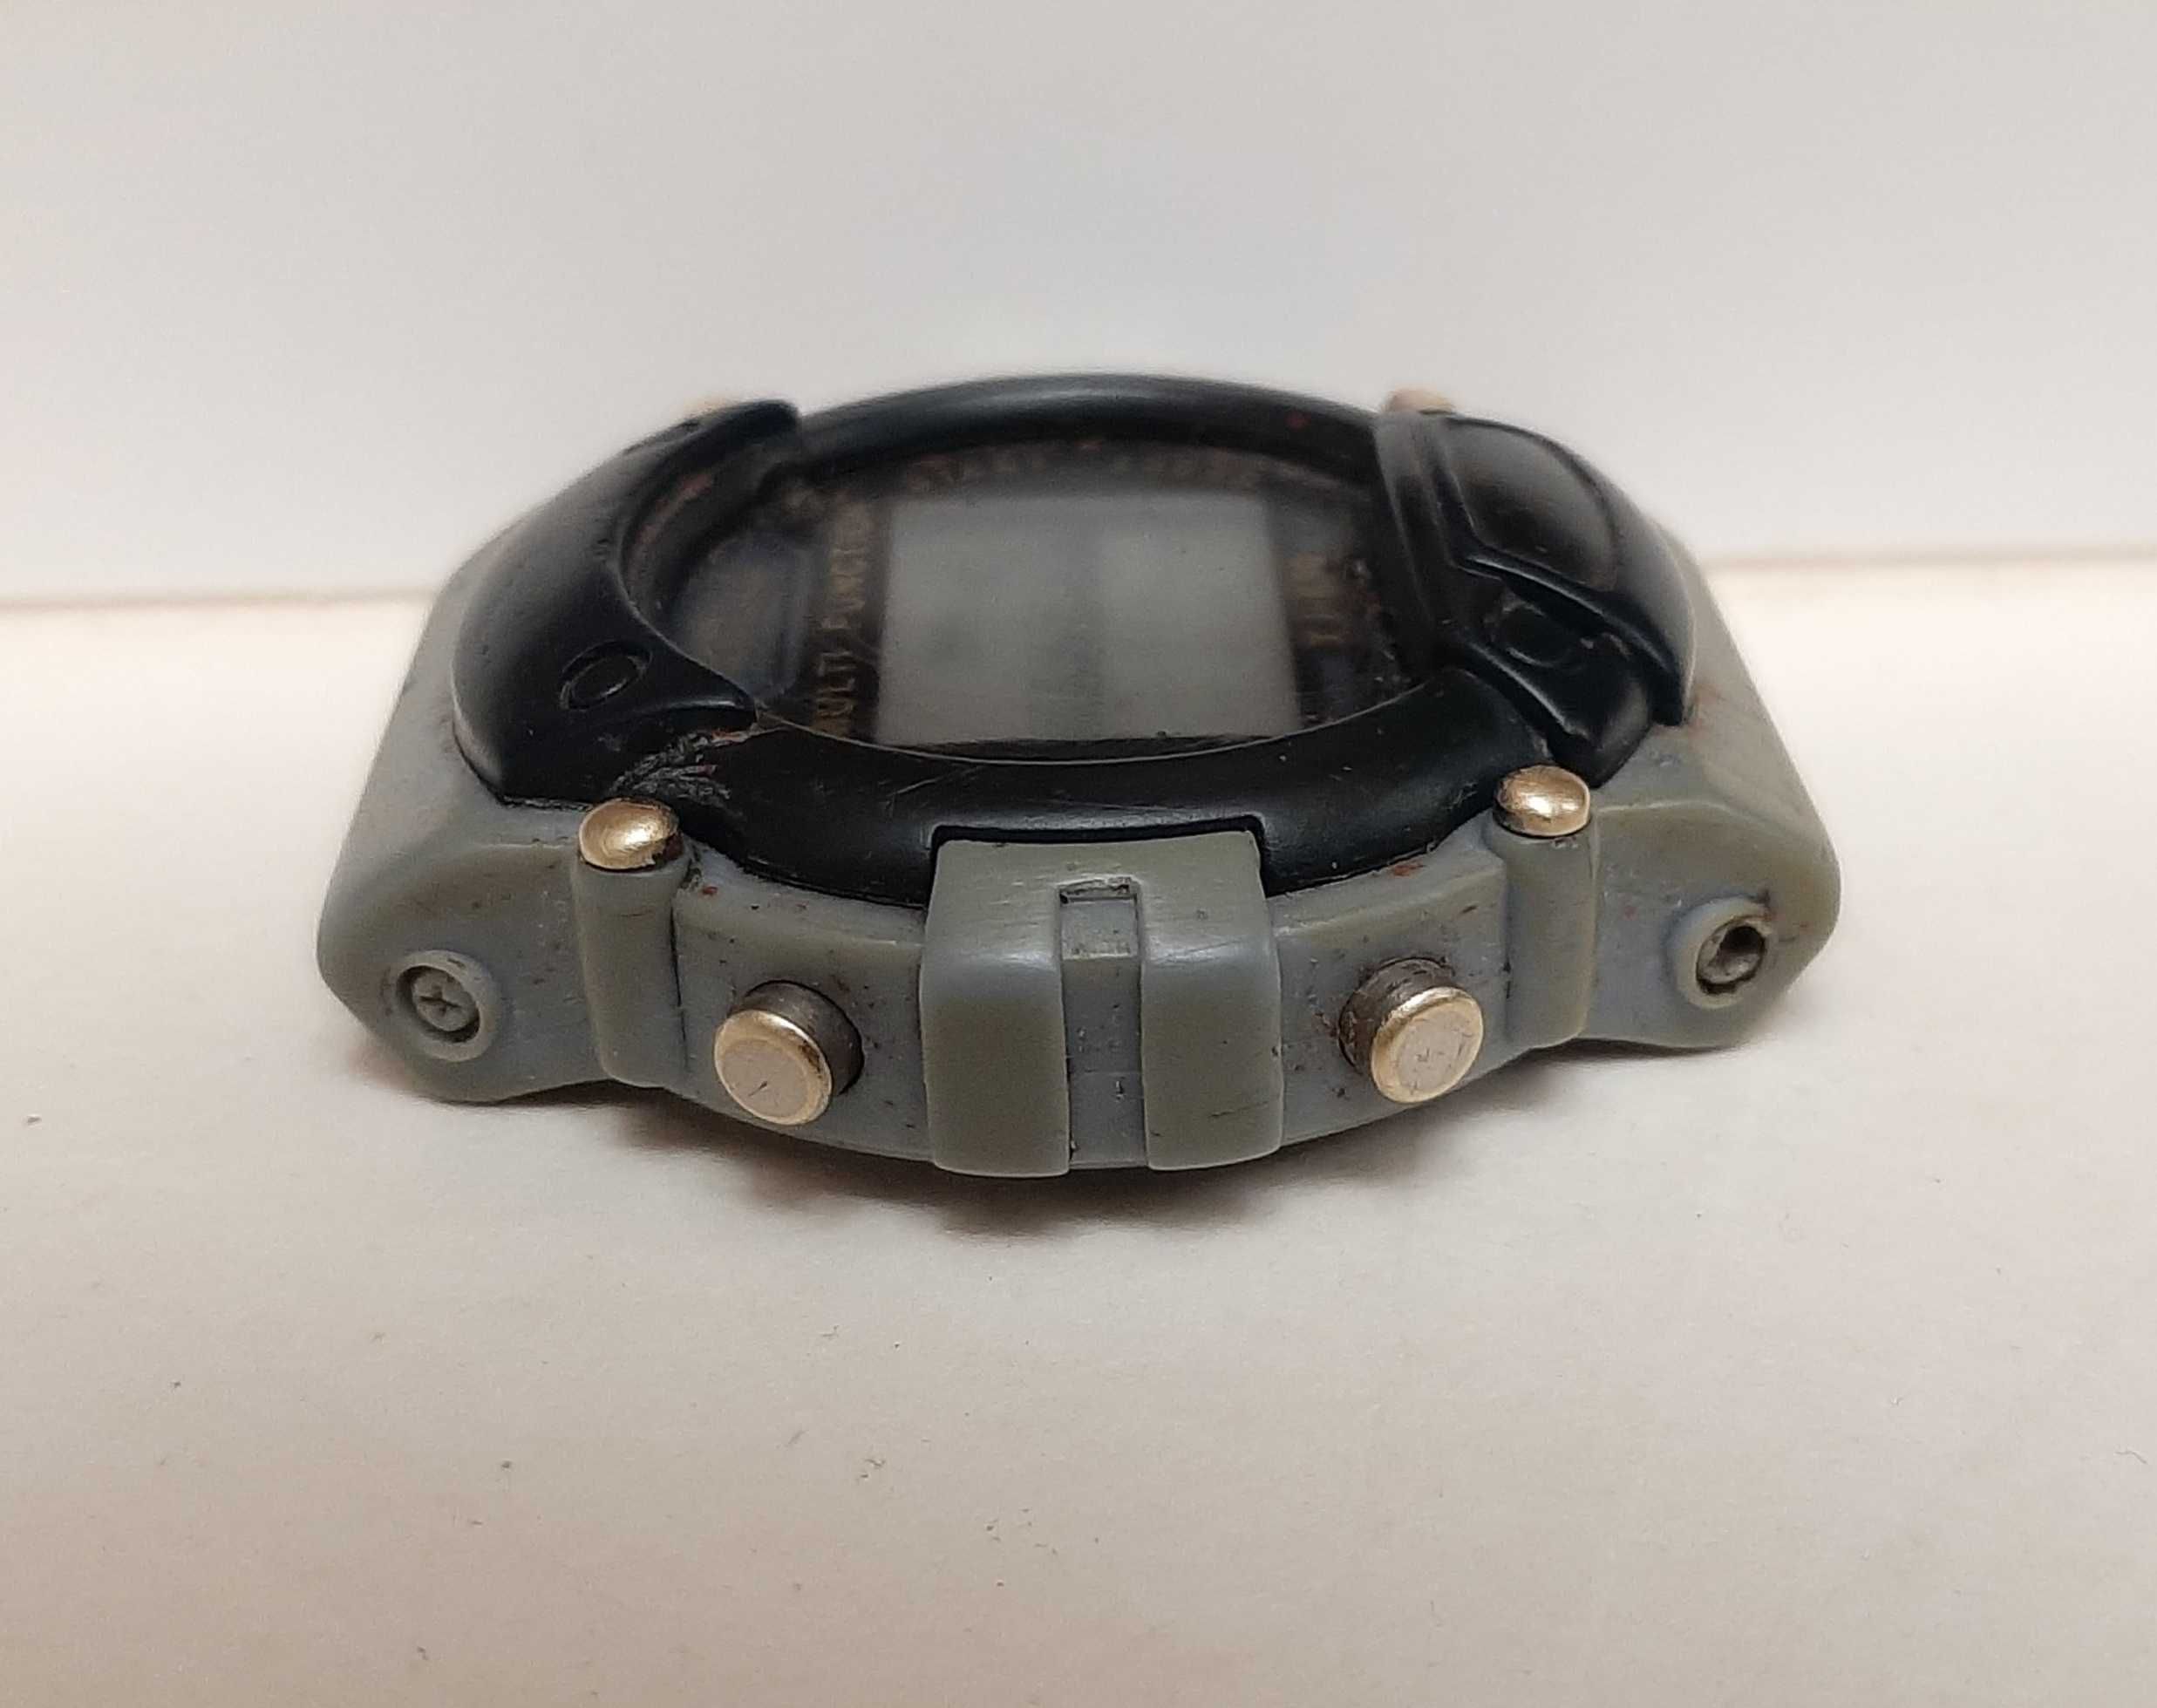 xinjia xj-639 часы наручные спортивные цифровые